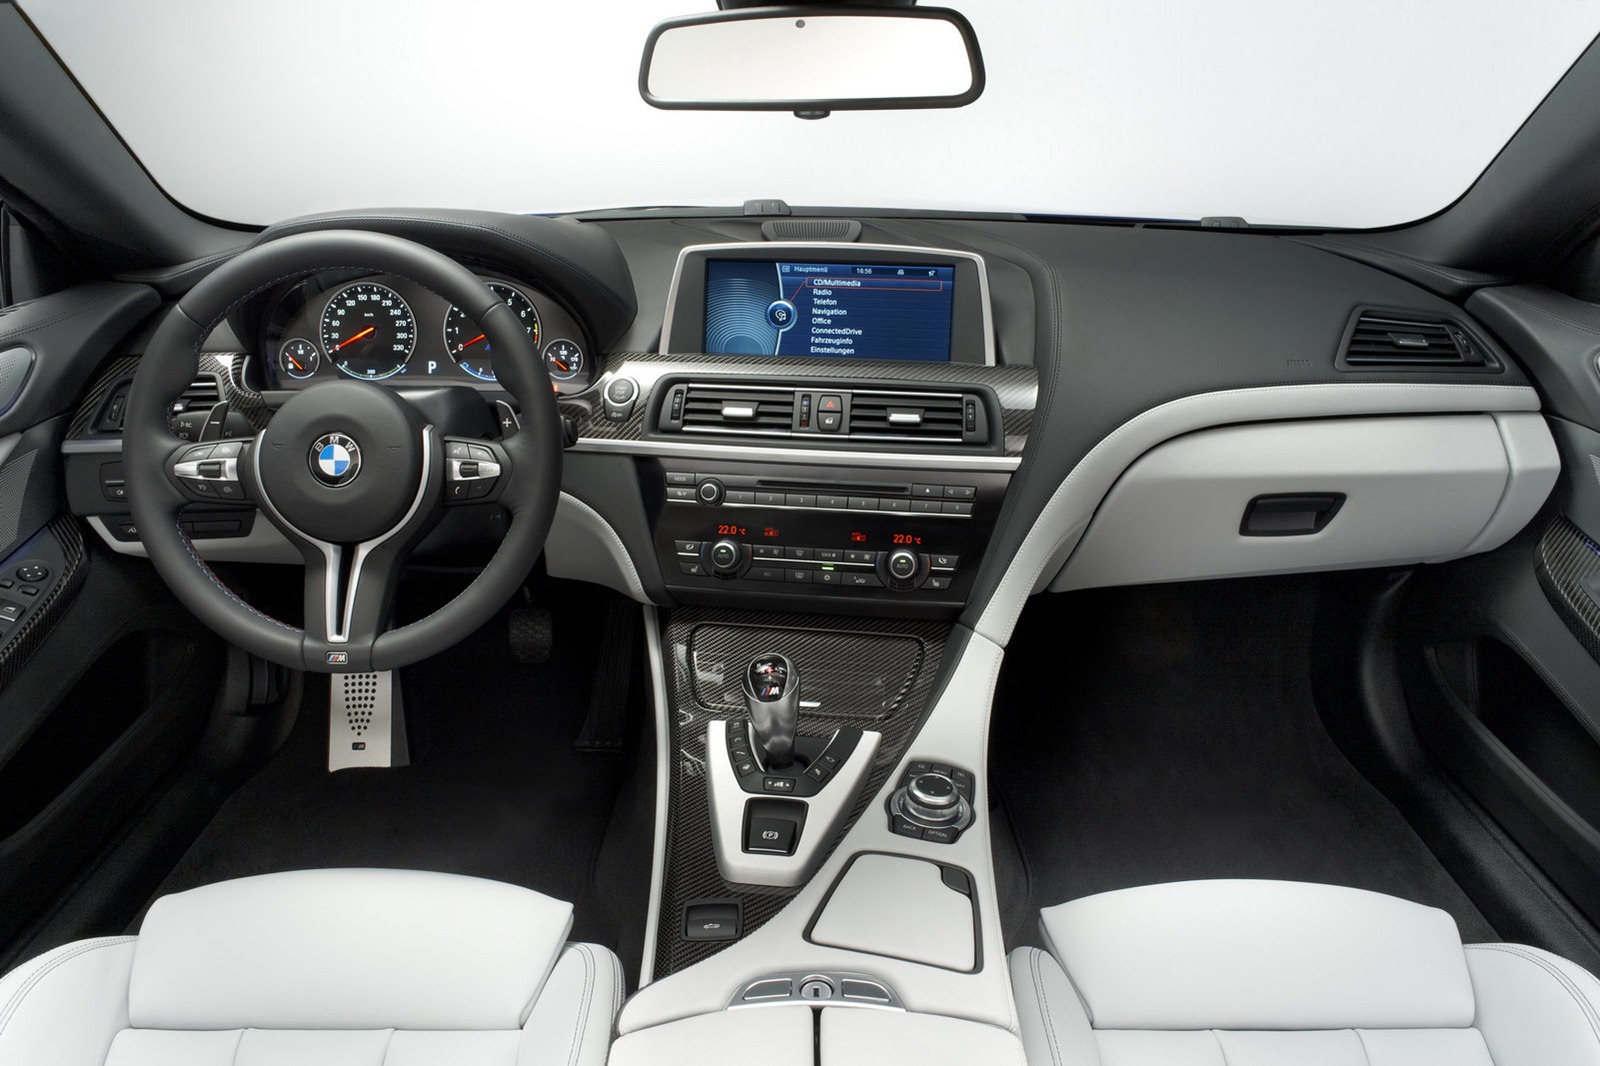 بي ام دبليو ام سكس 2013 تعرض قبل معرض جنيف الدولي للسيارات BMW M6 2013 25